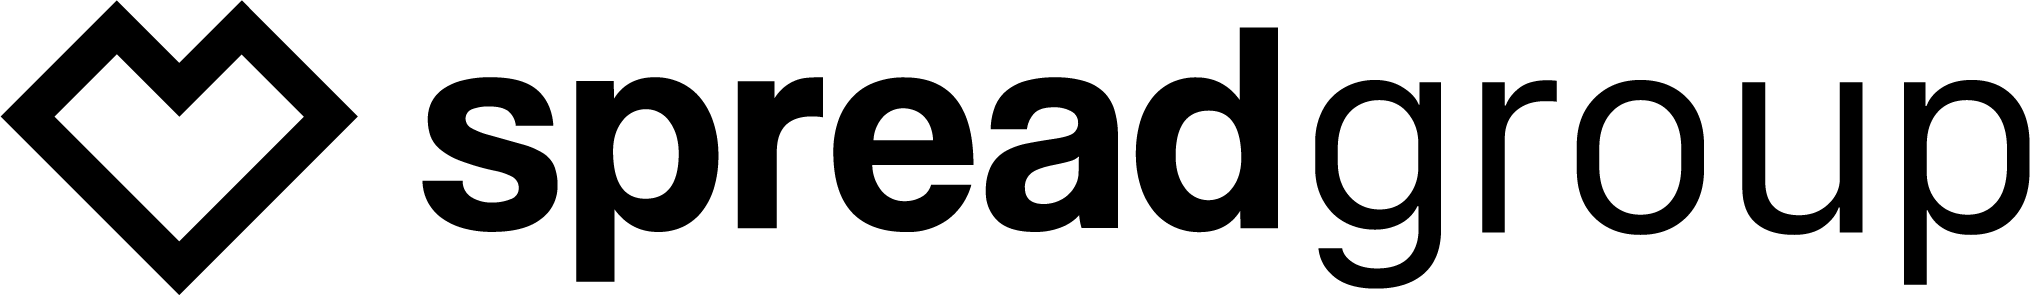 Spreadgroup-logo